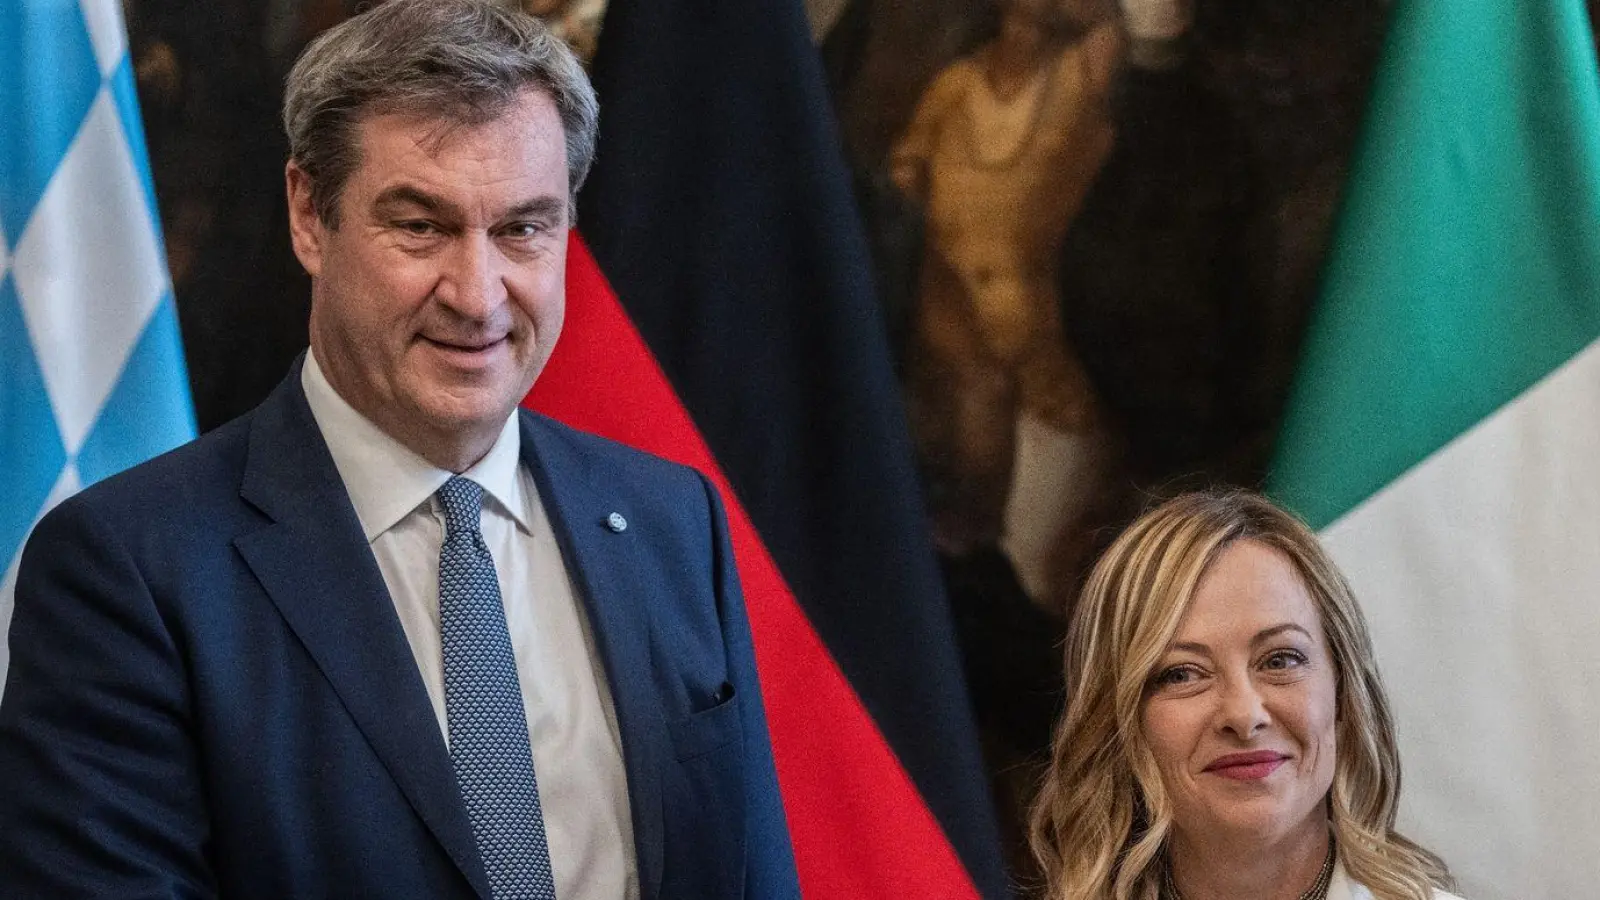 Bayerns Ministerpräsident Markus Söder und Italiens Regierungschefin Giorgia Meloni sind sich in energie-, verkehrs- und asylpolitischen Fragen recht einig. (Foto: Oliver Weiken/dpa)